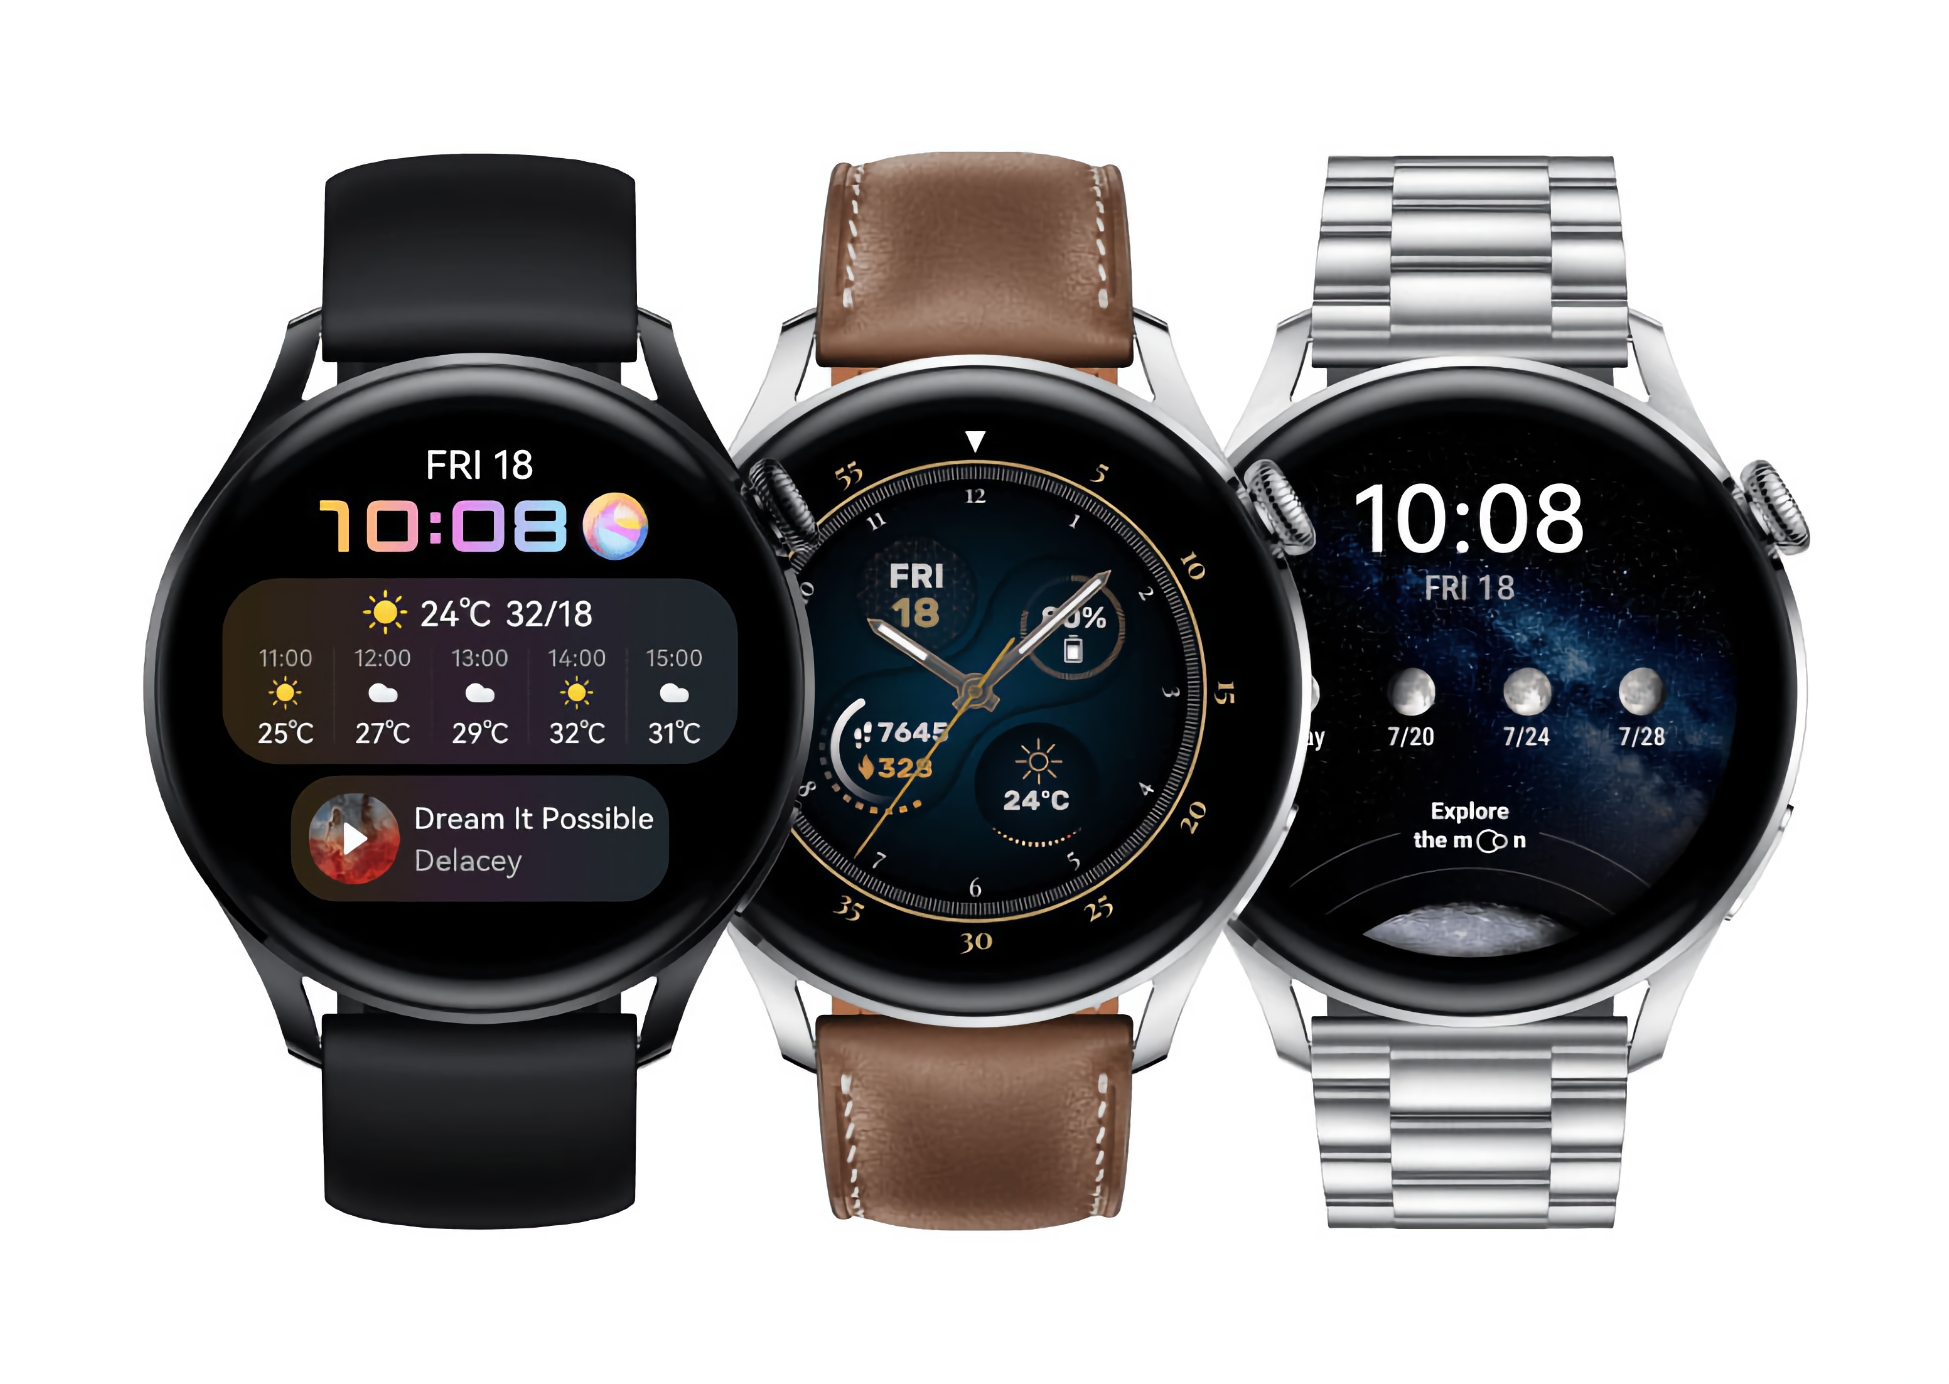 La montre intelligente Huawei Watch 3 Pro avec mise à jour HarmonyOS 2.0.0.197 a reçu de nouvelles fonctionnalités